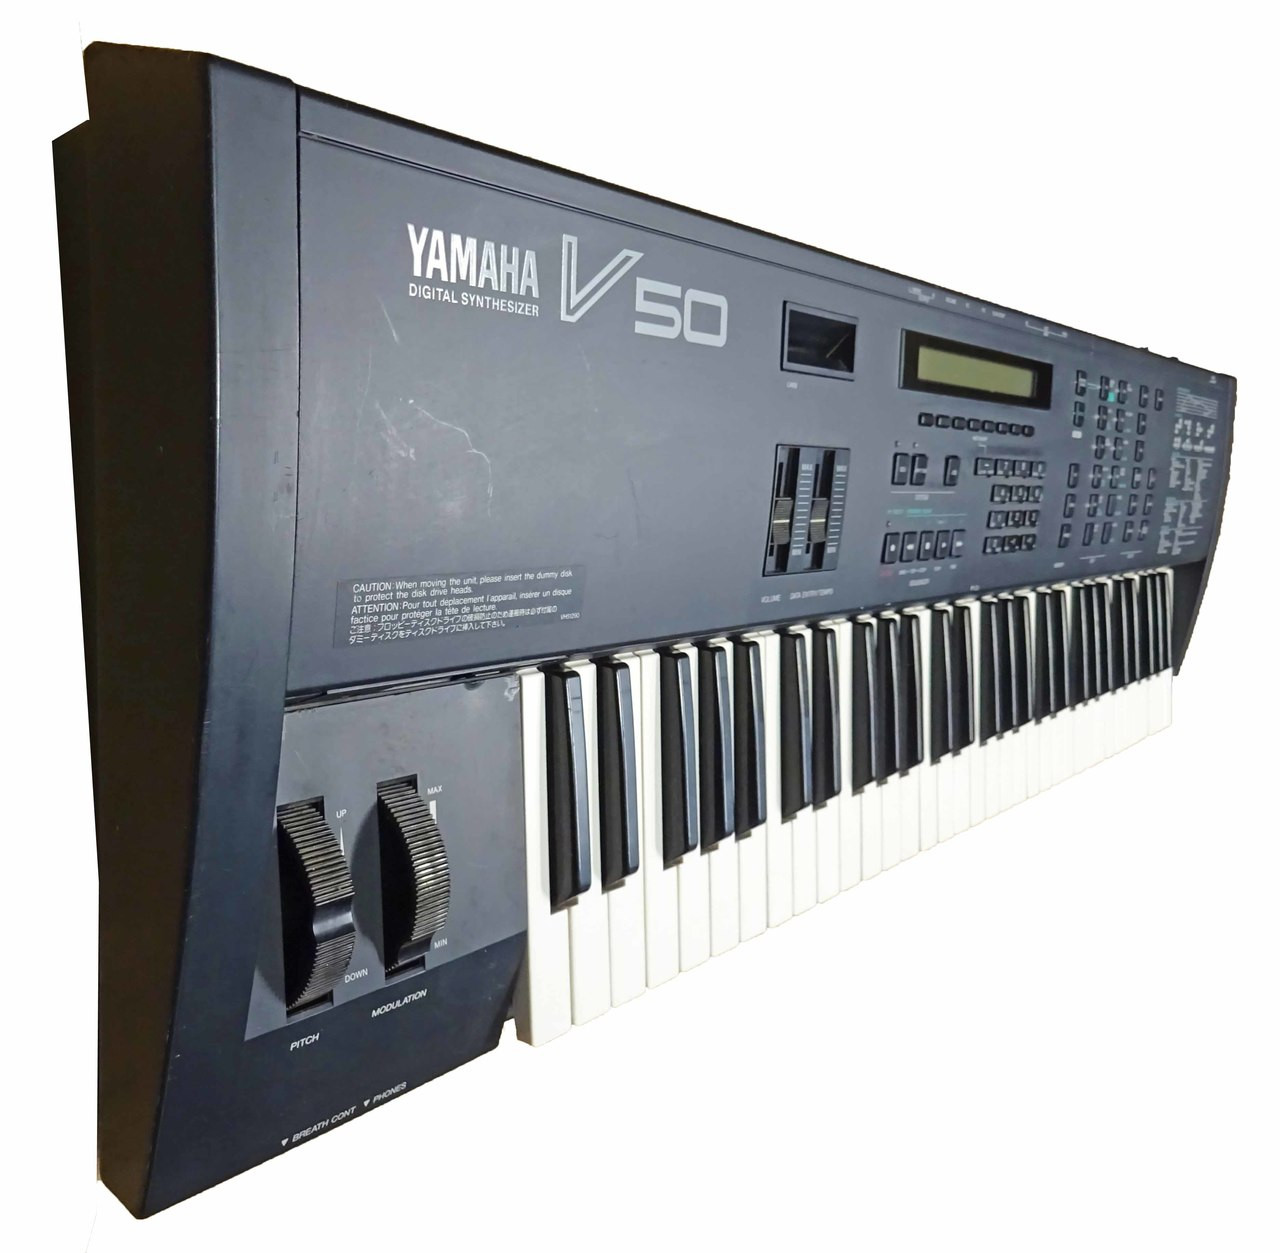 Yamaha V50 Digital Synthesizer